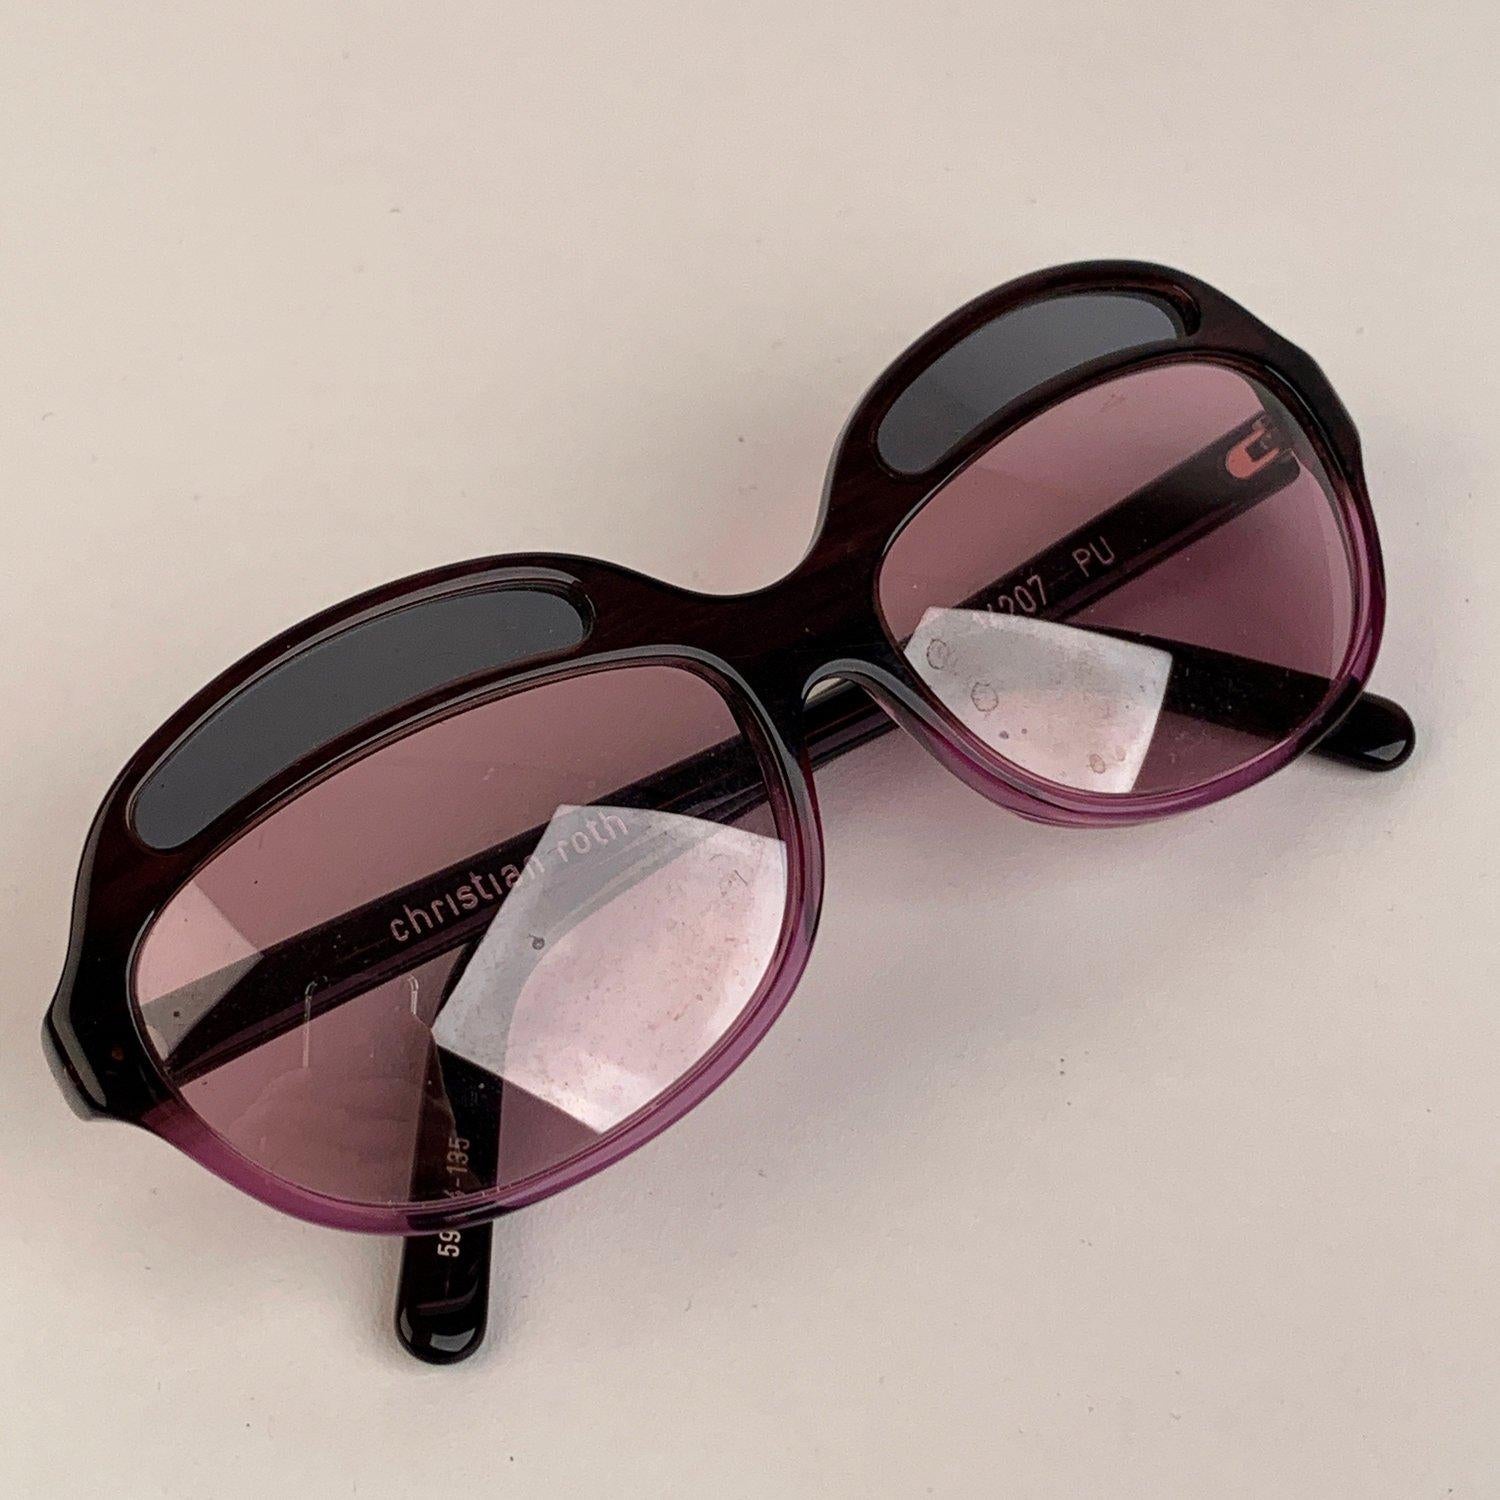 Magnifiques lunettes de soleil vintage Christian Roth, mod. 14207, des années 1990. Monture translucide violette avec détails de doubles lentilles. Verres originaux roses (100% de protection UVA/UVB). Mod & refs : 59/14 - 135 - 14207 - PU - Fabriqué